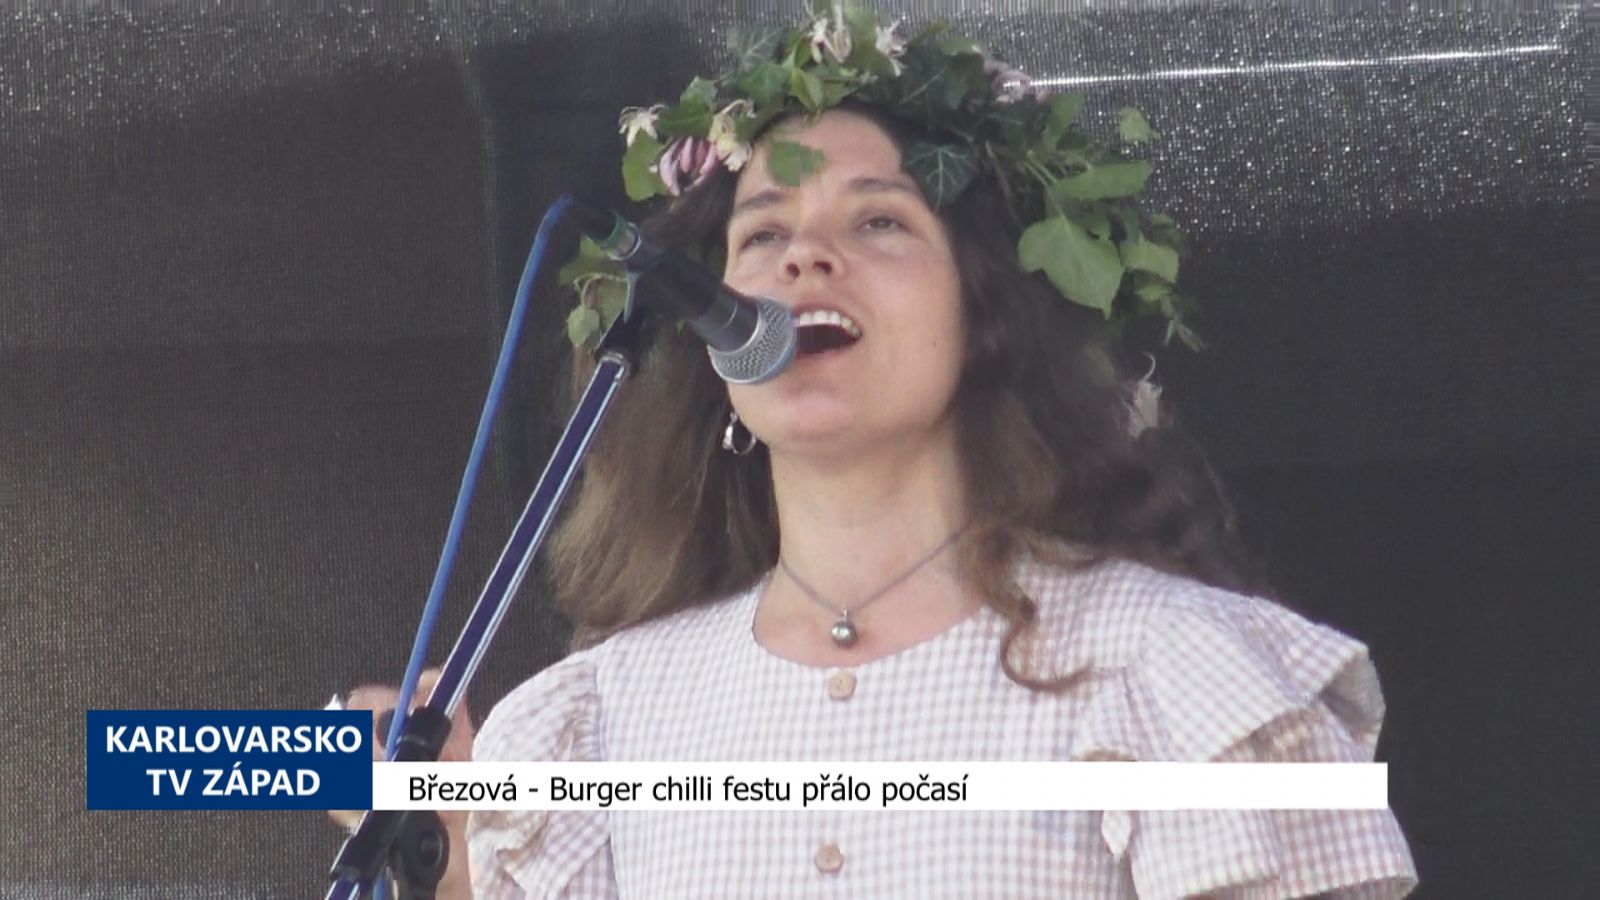 Březová: Burger chilli festu přálo počasí (TV Západ)